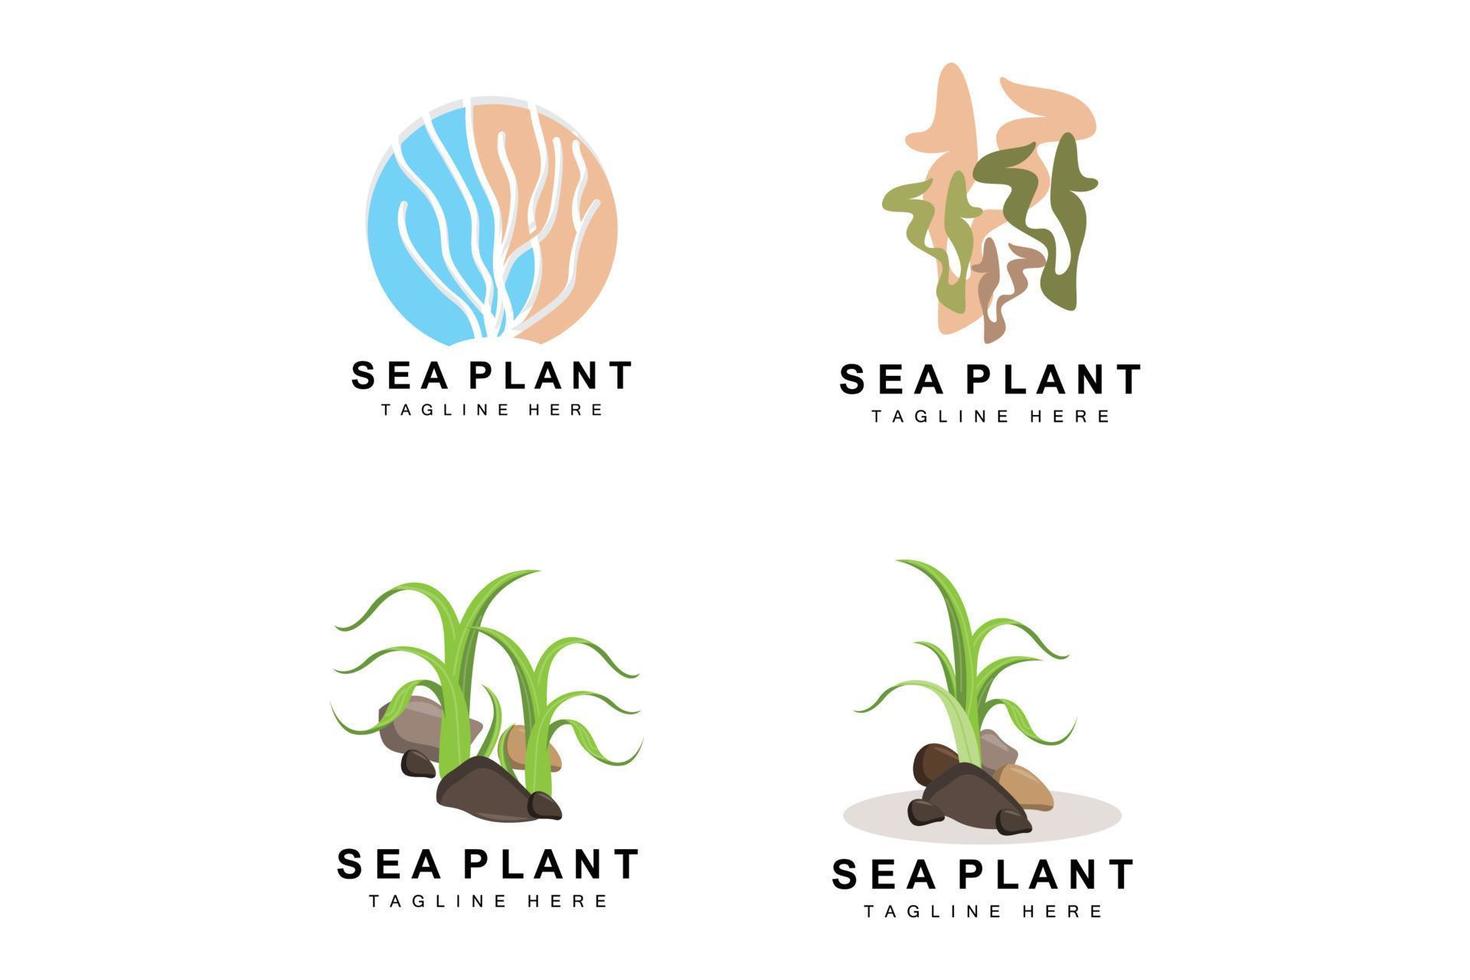 logotipo de algas marinhas, design vetorial de plantas marinhas, mercearia e proteção da natureza vetor